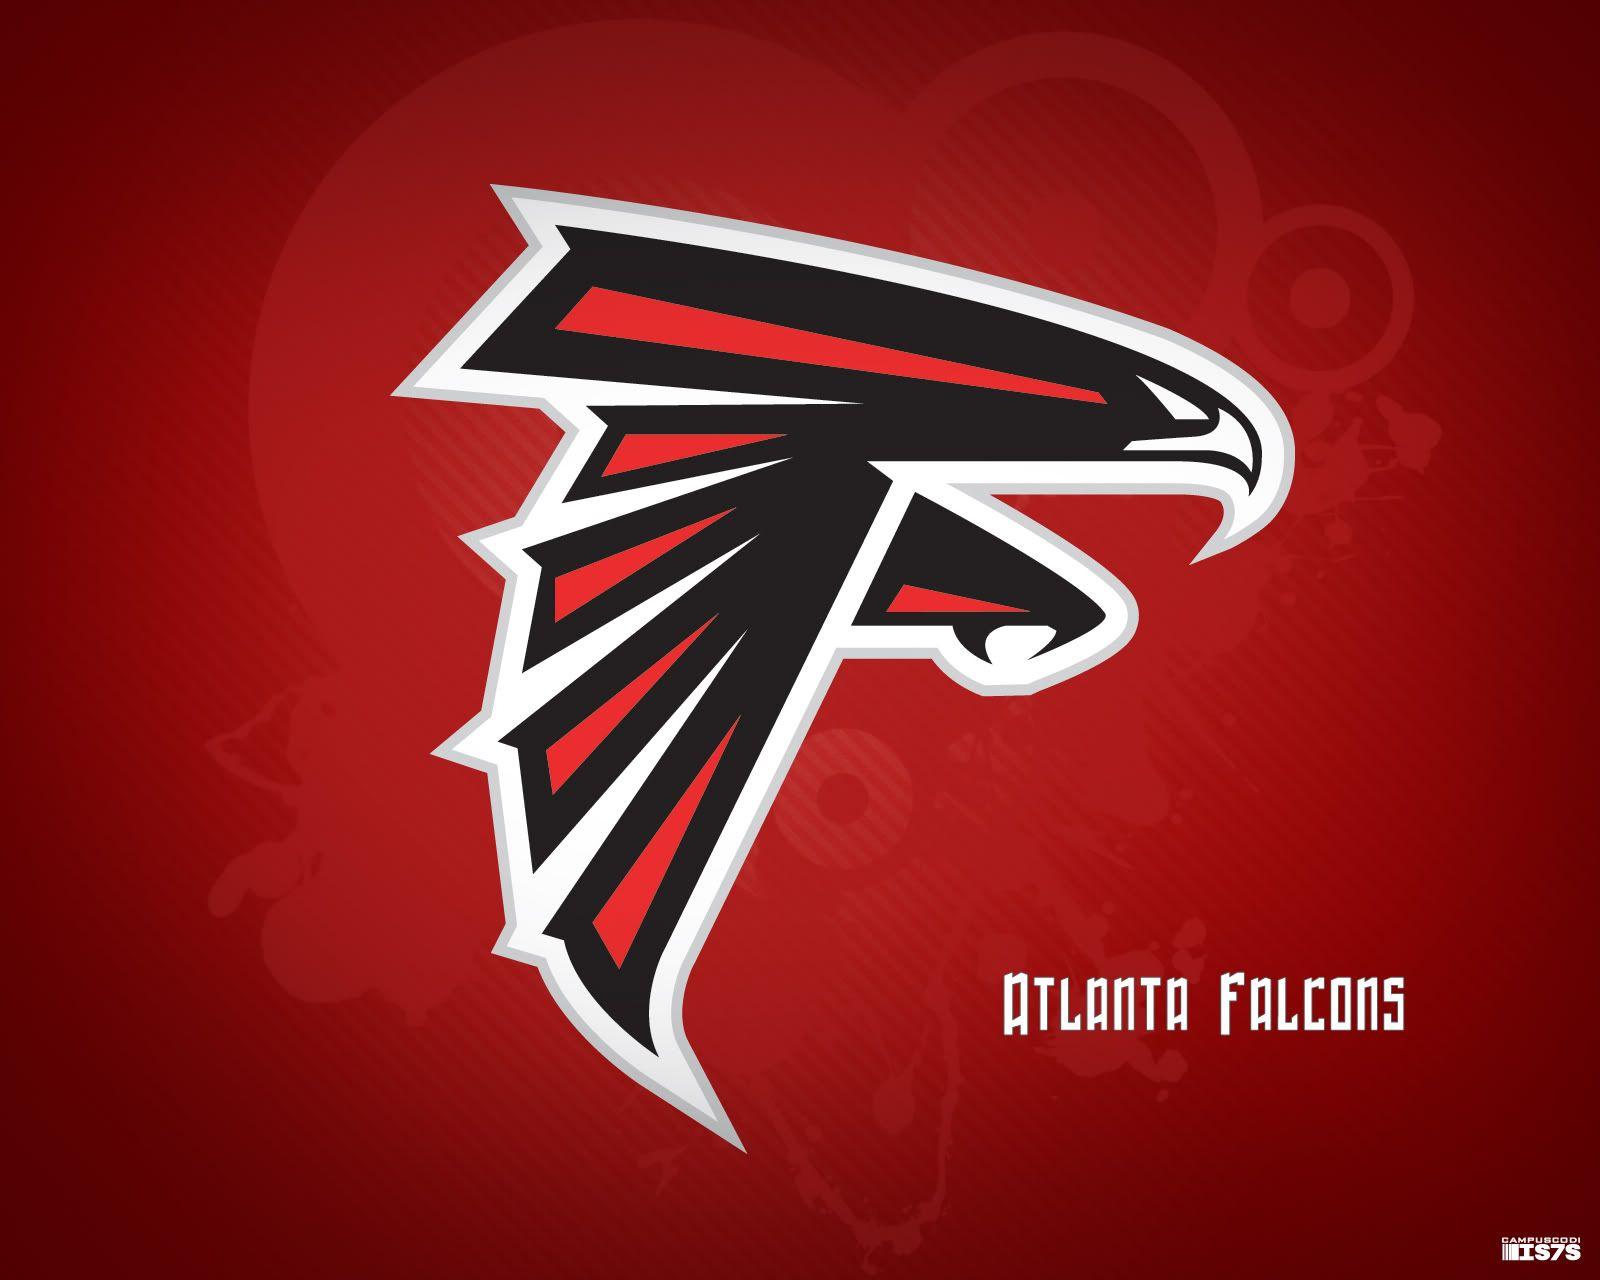 NFL Falcons Logo - ATLANTA FALCONS nfl football g wallpaper | 1600x1280 | 154609 ...